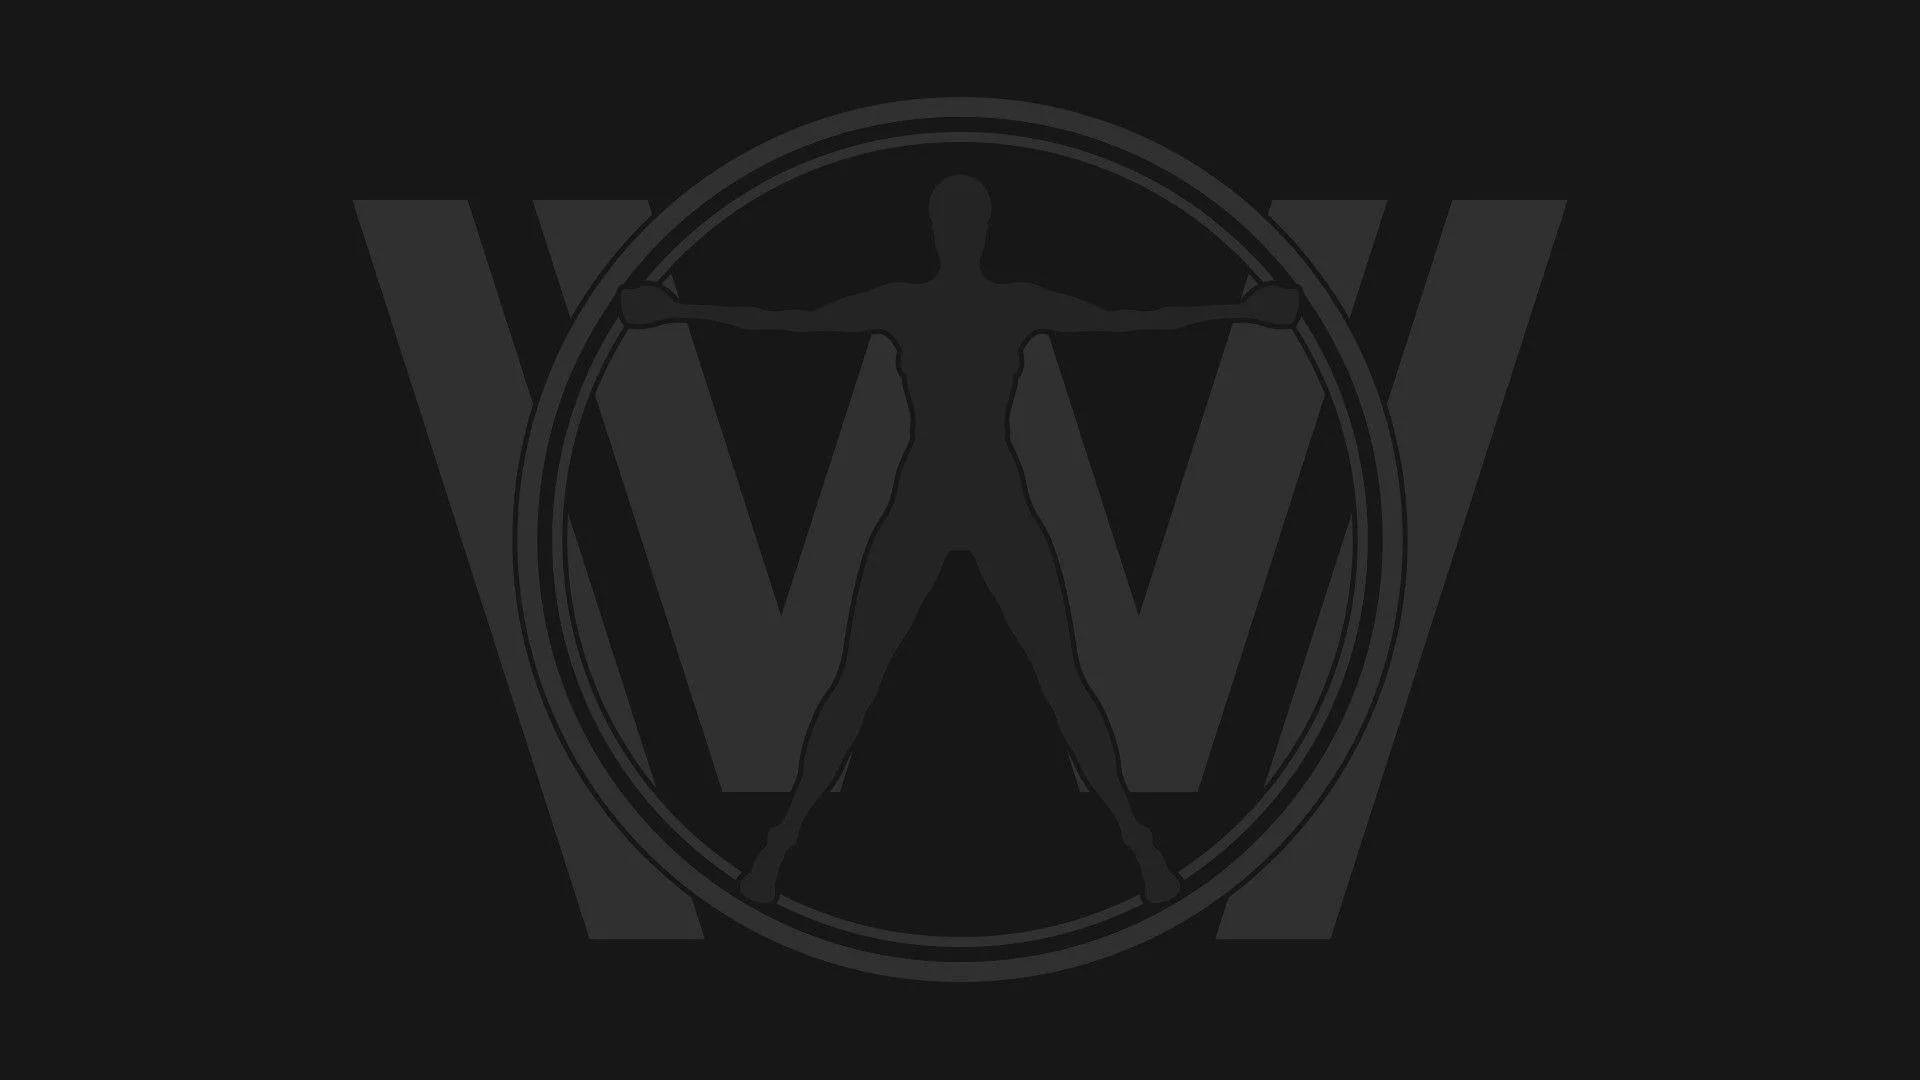 Westworld Black Theme Emblem Background